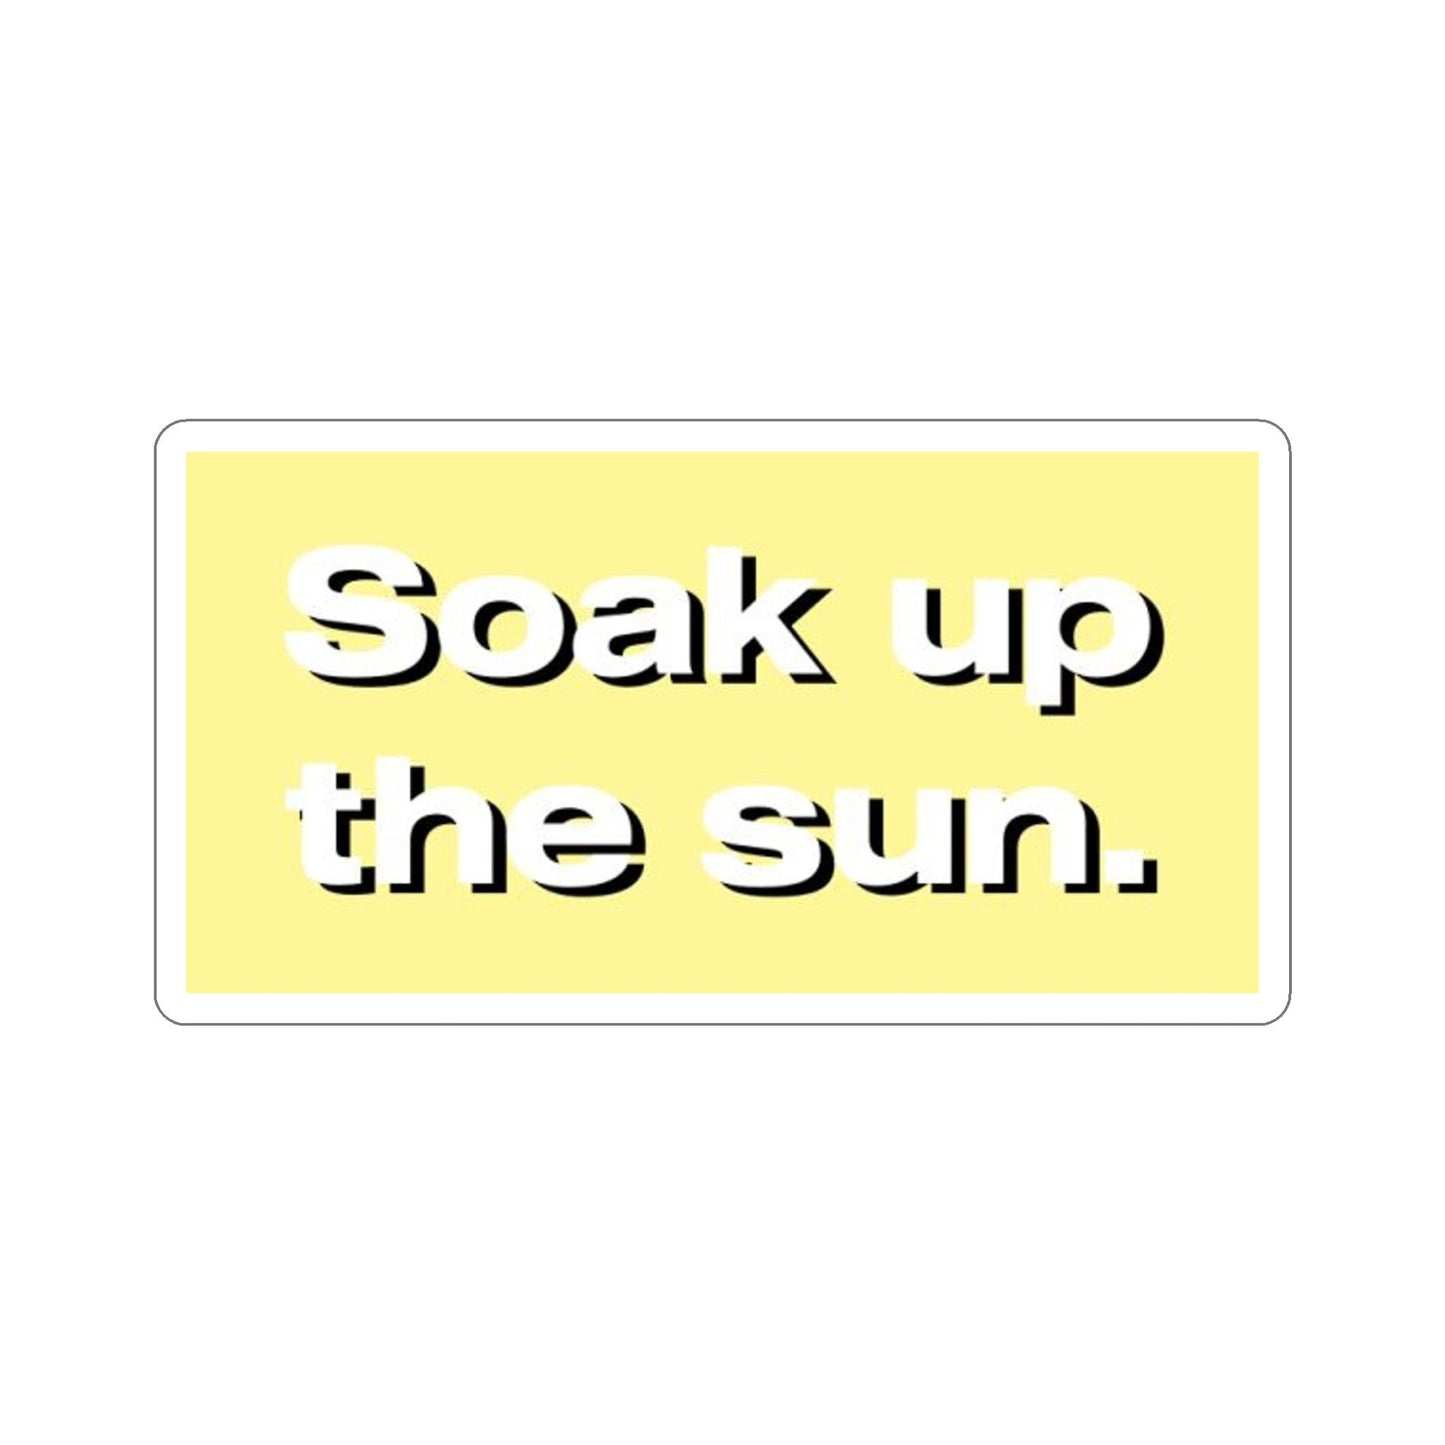 SUNSOAK Soak up the sun. Sticker